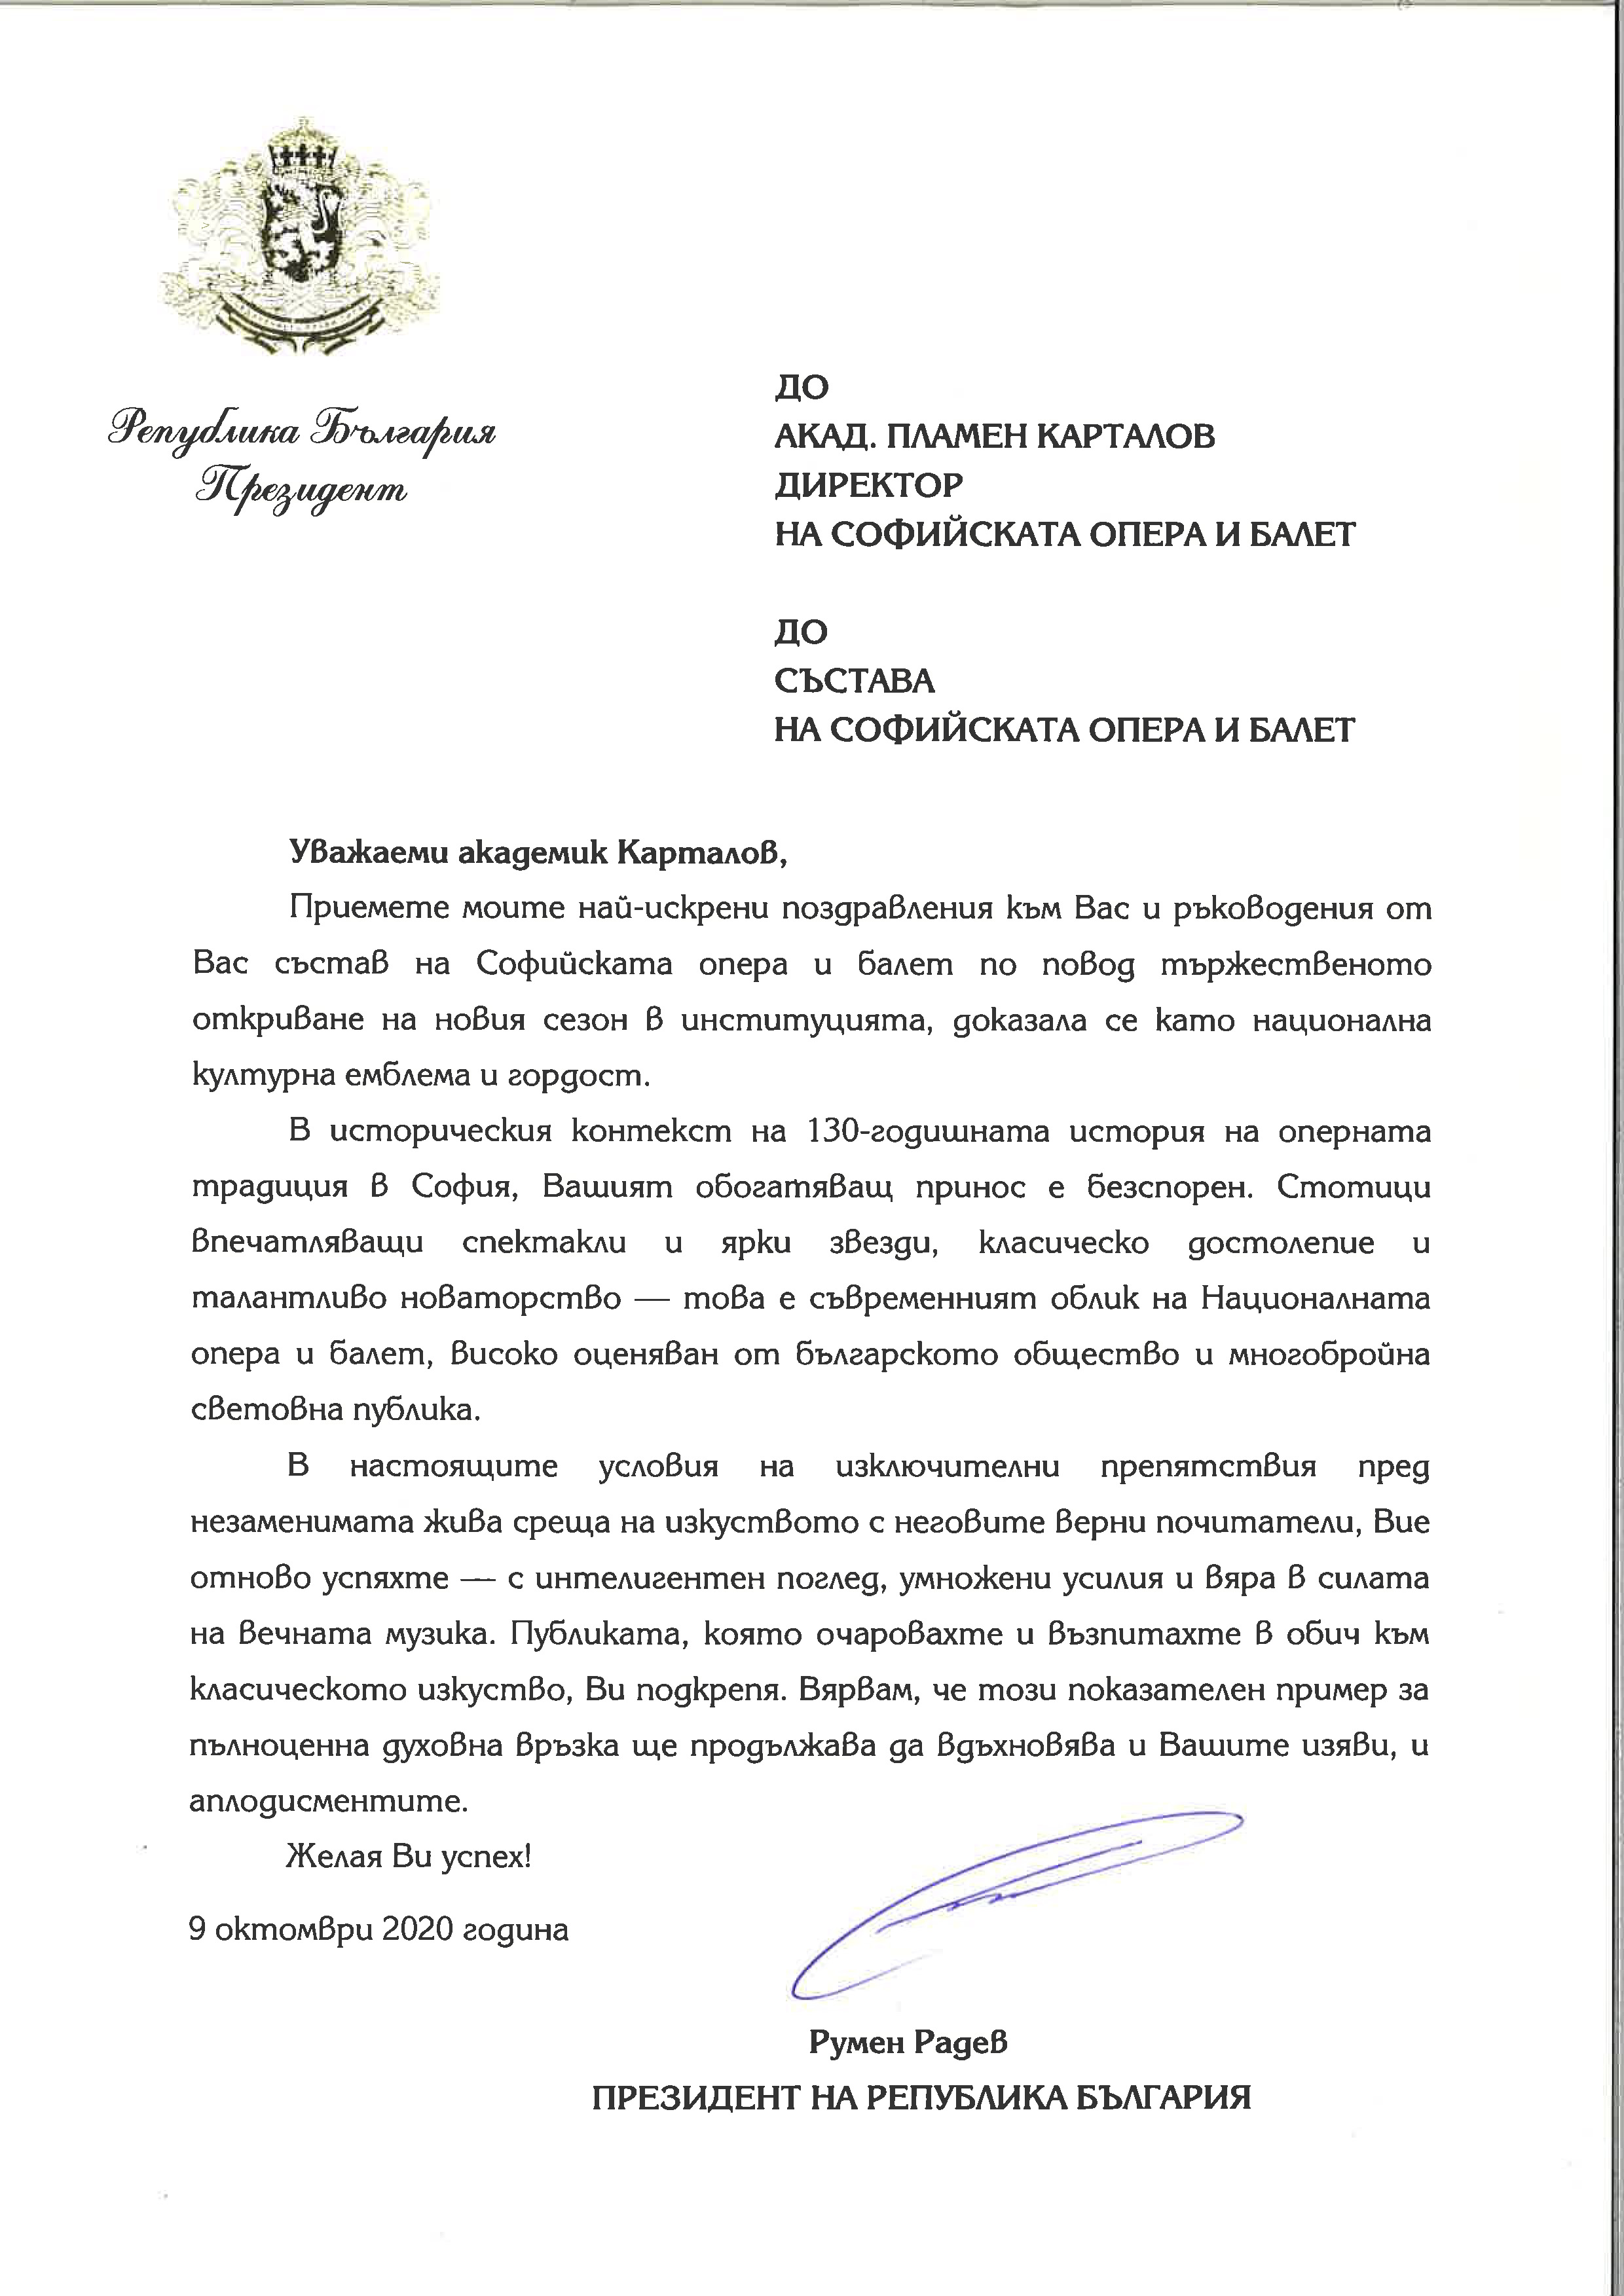 Поздравителен адрес от Президента - Румен Радев.